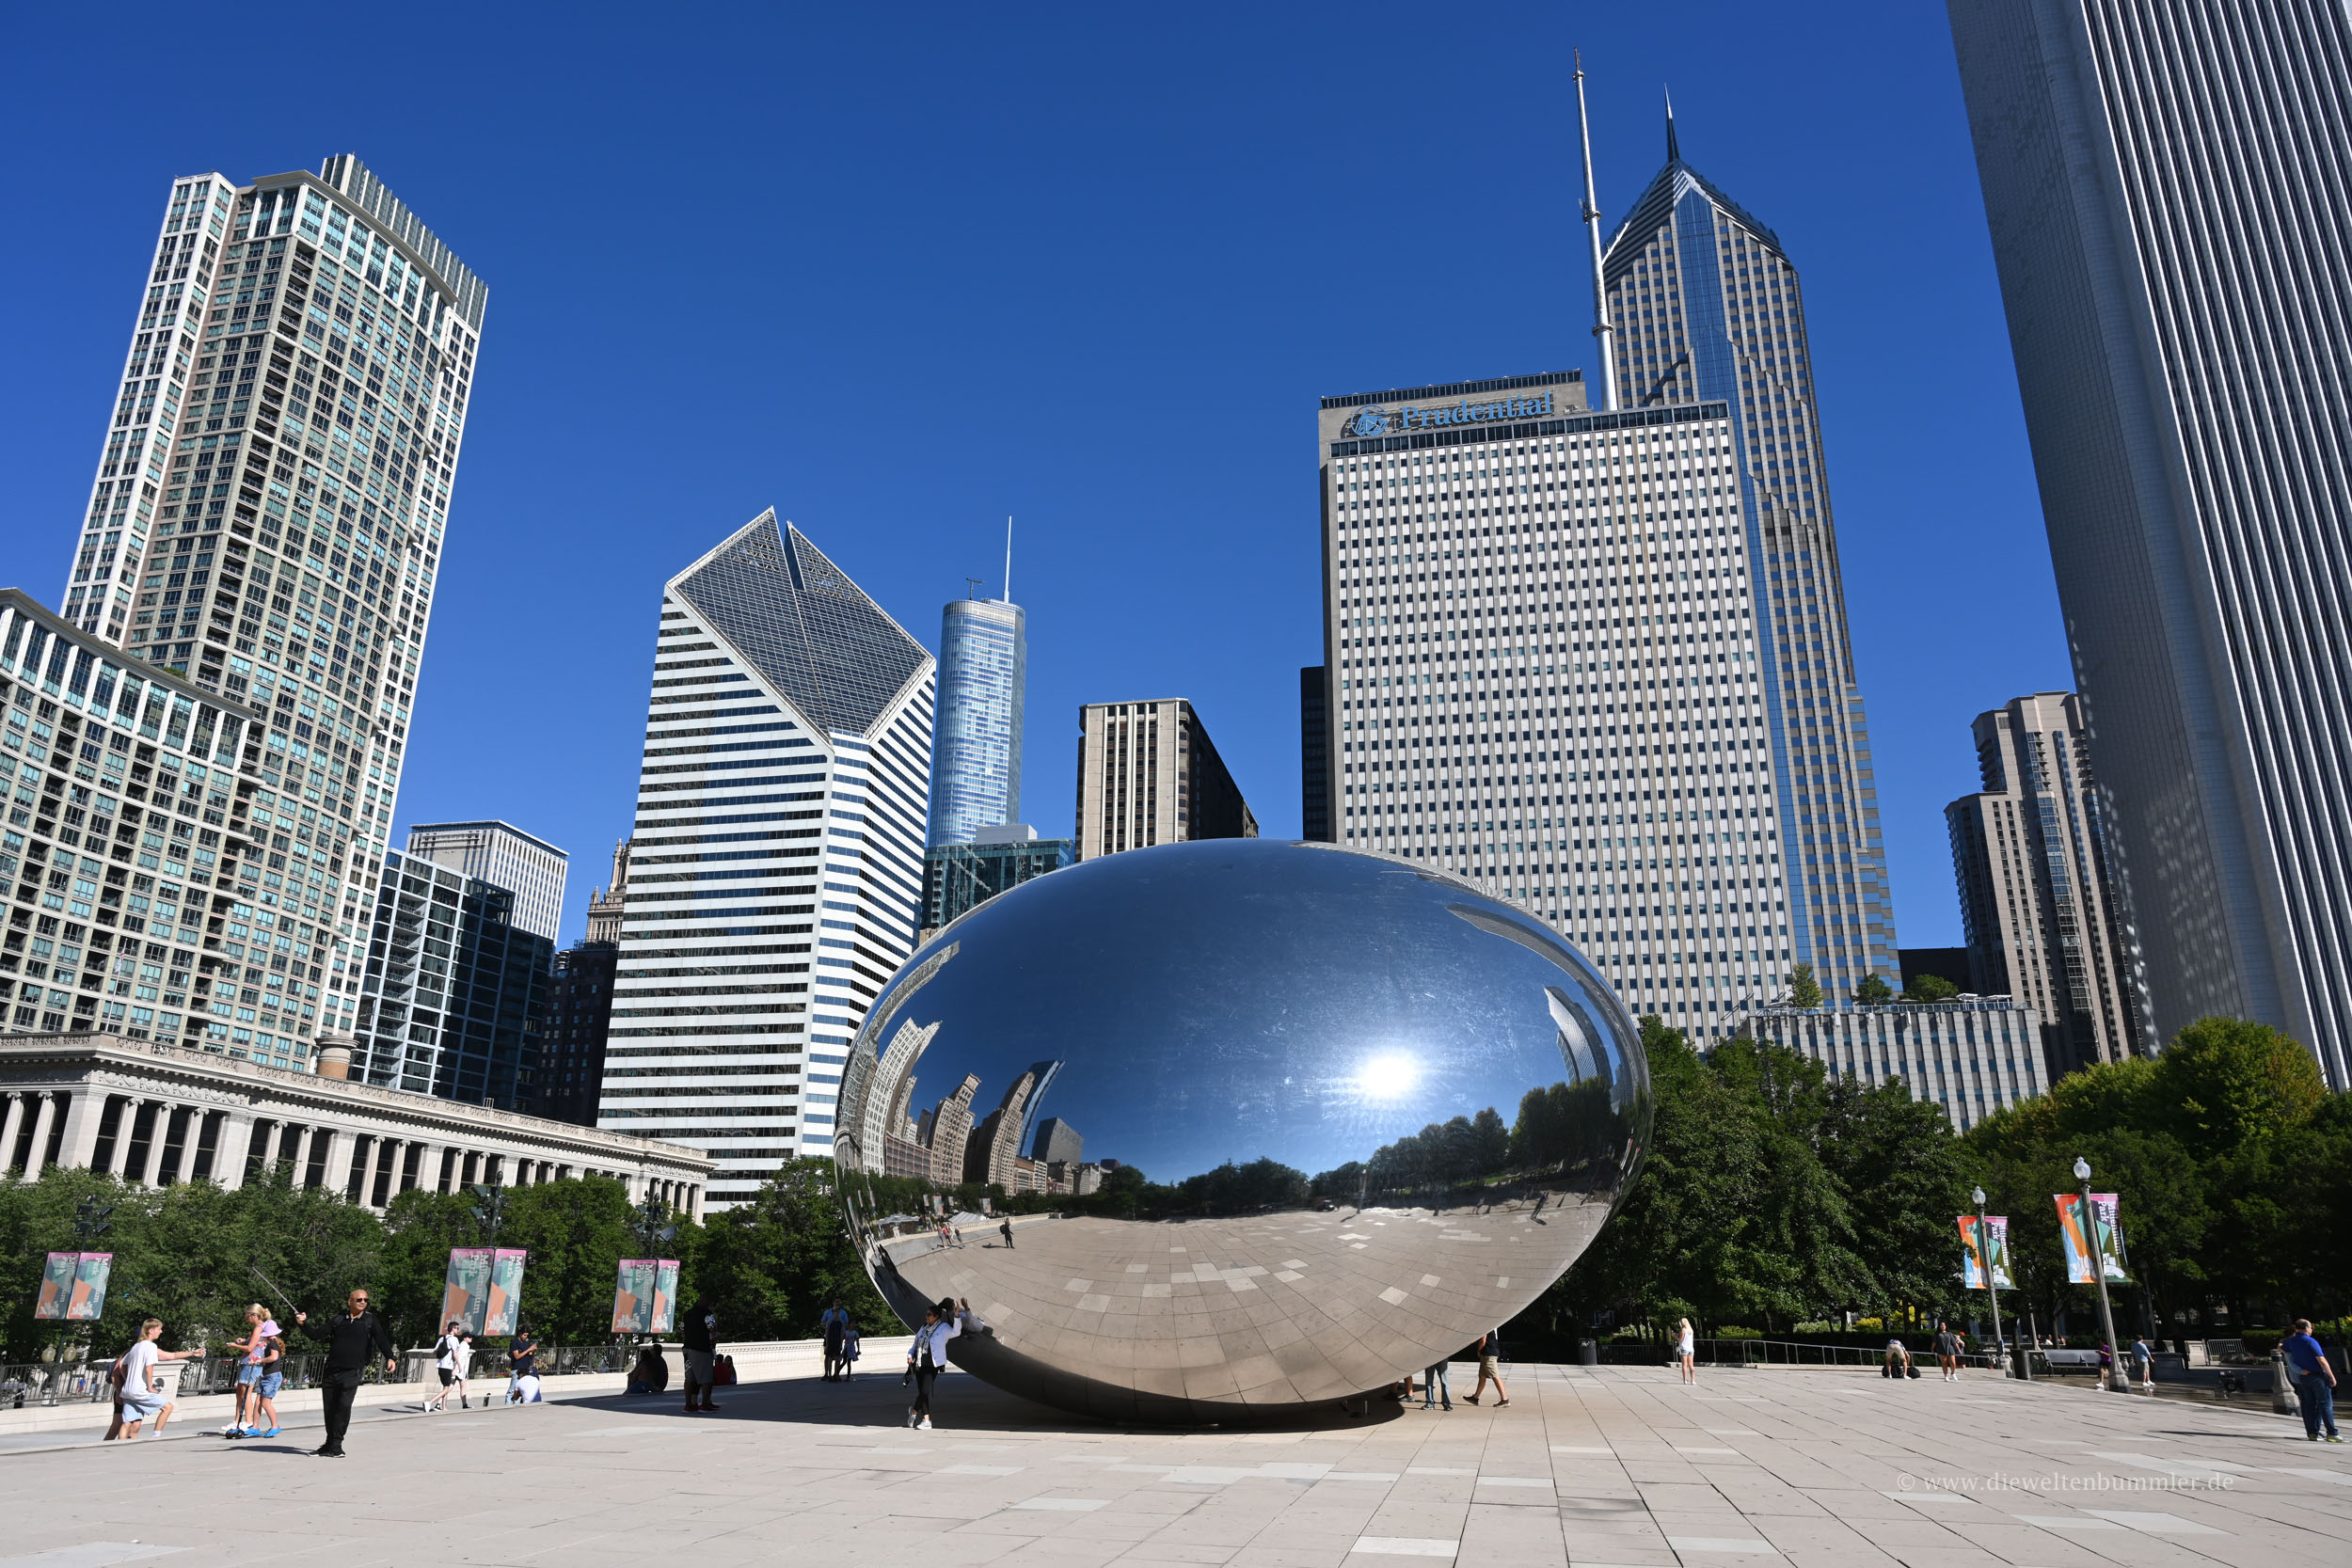 In der Cloud Gate spiegelt sich Chicago